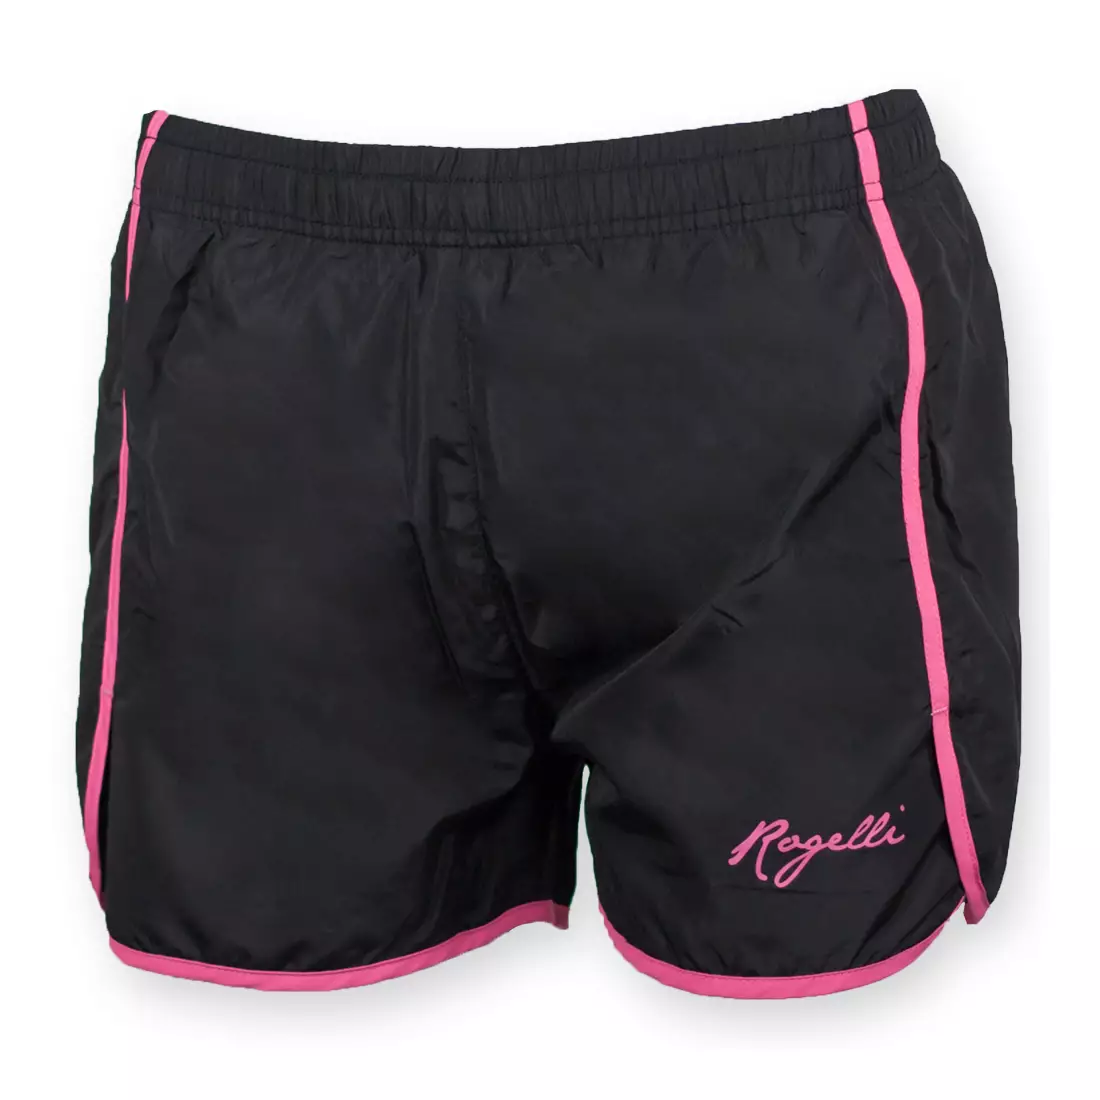 Dámské běžecké šortky ROGELLI KYRA, černo-růžové